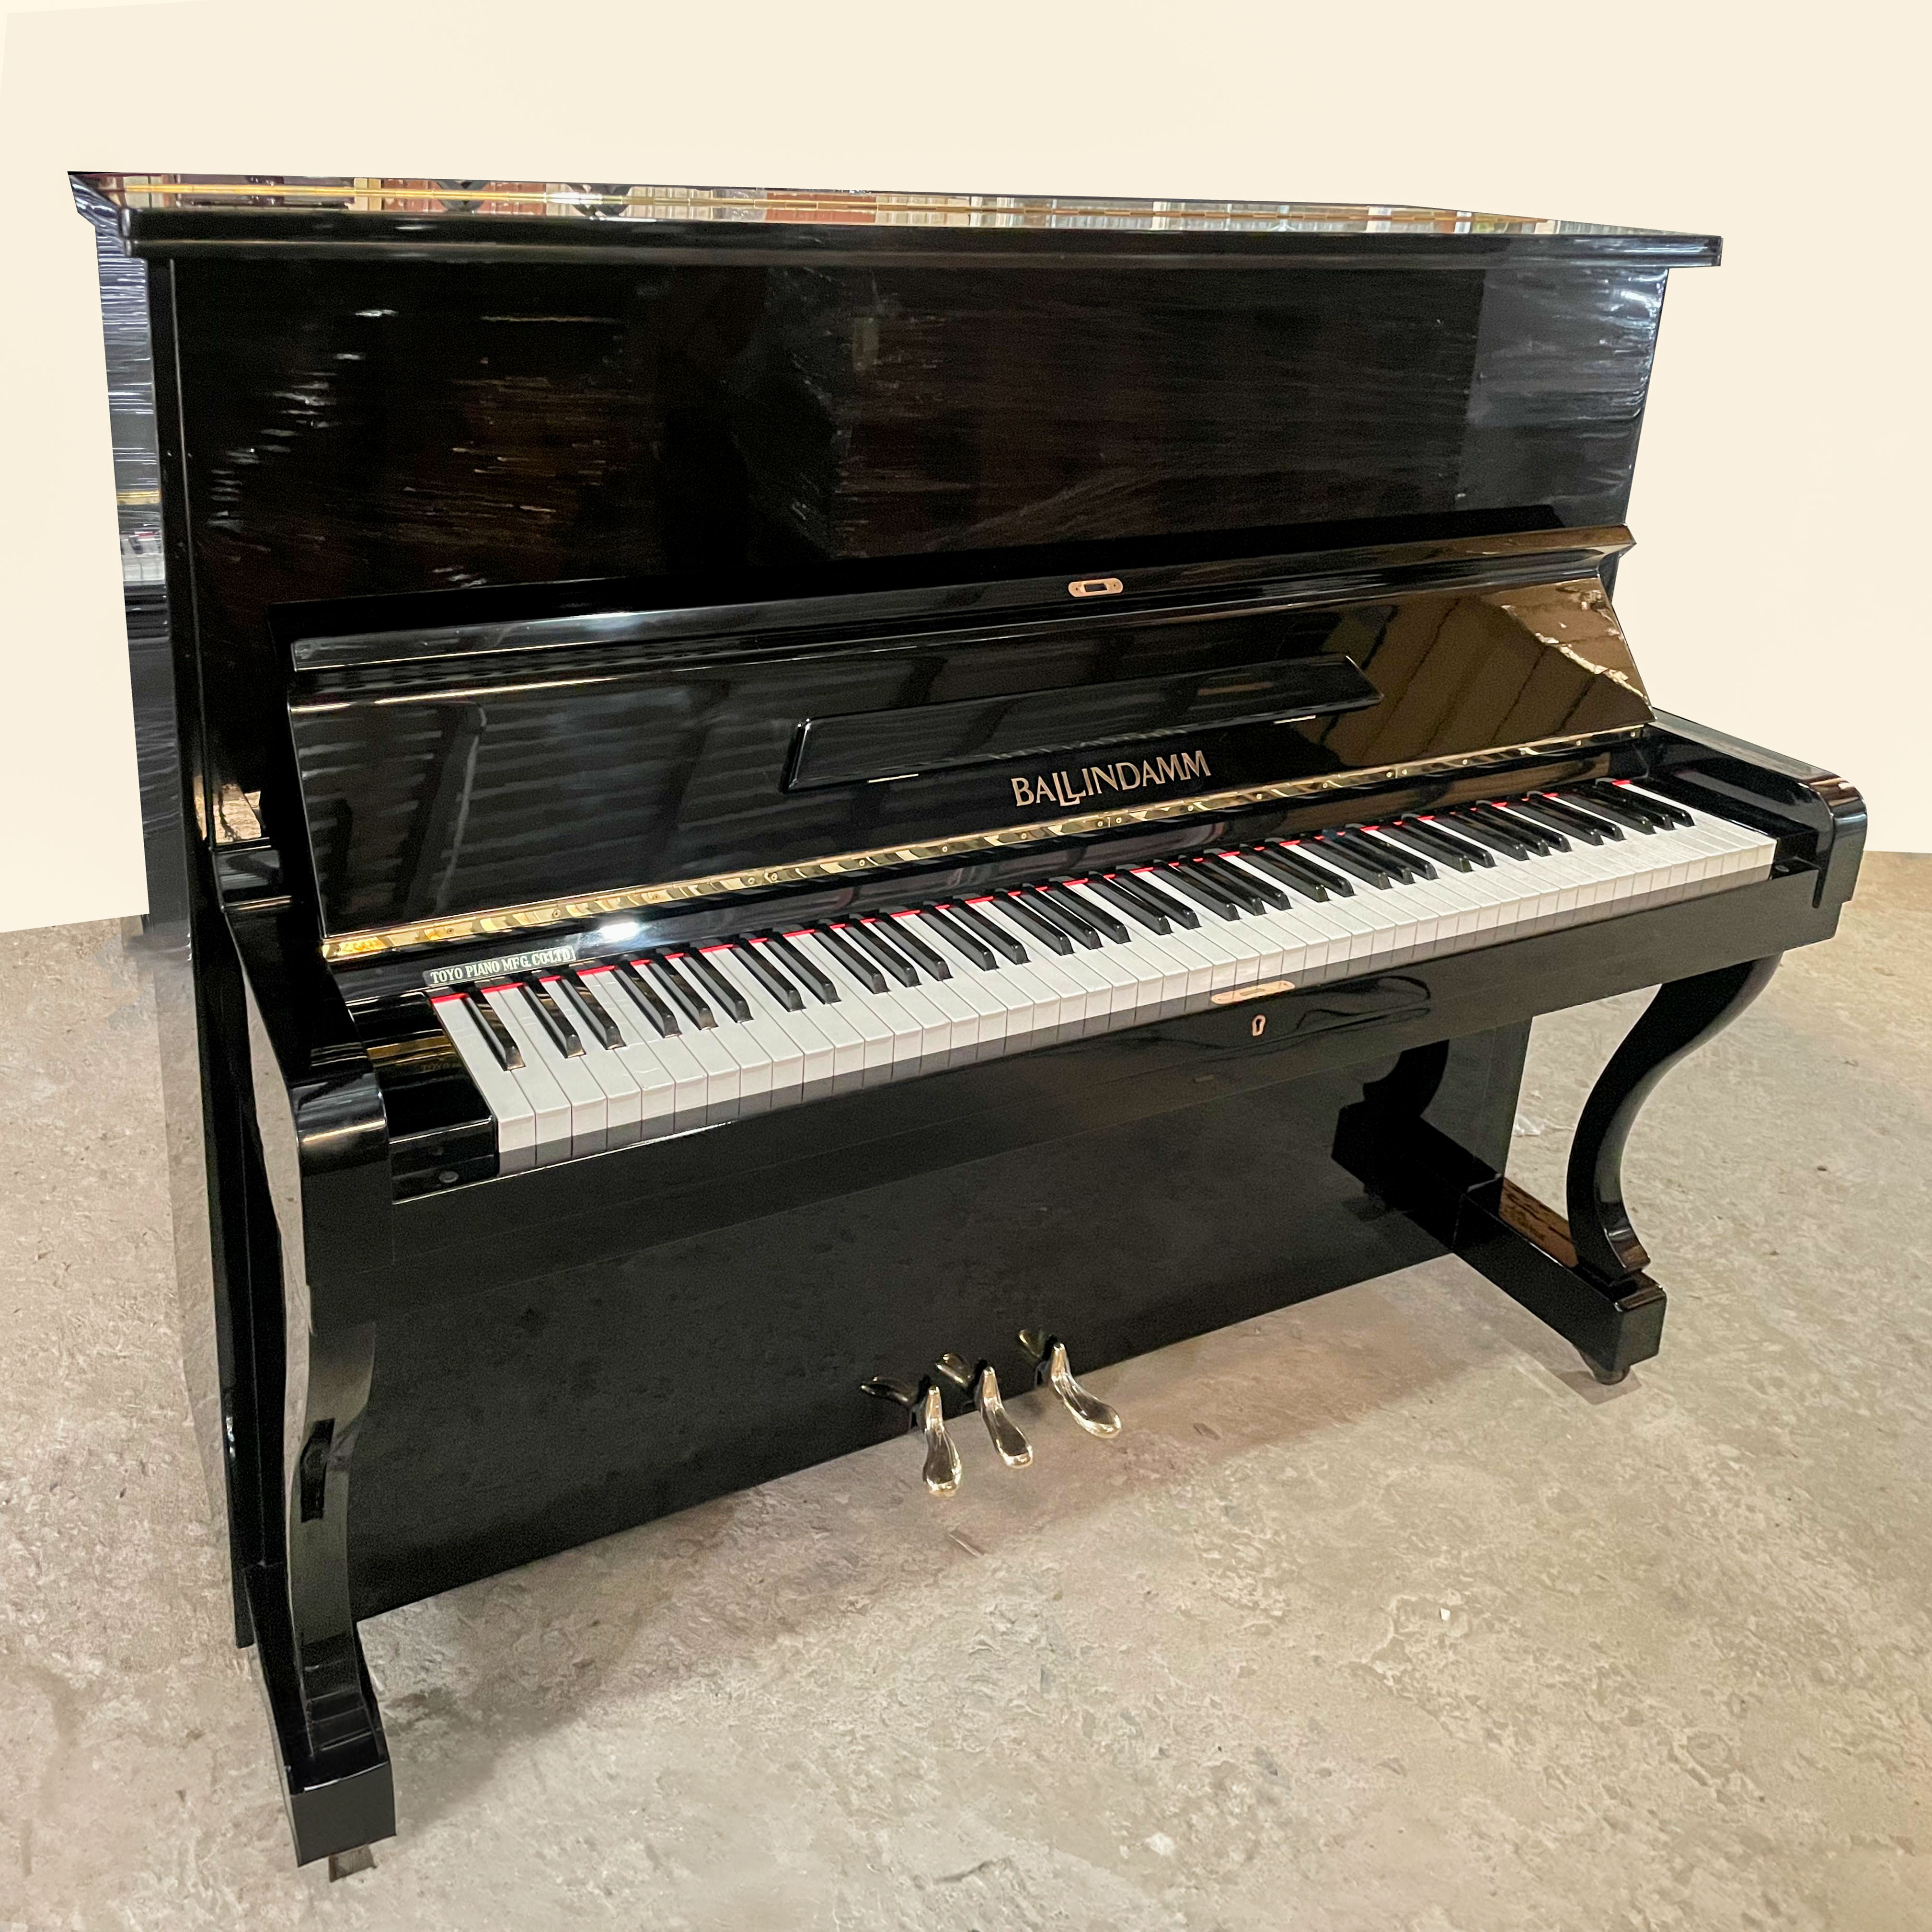 ĐÀN PIANO CƠ BALLINDAMM B126